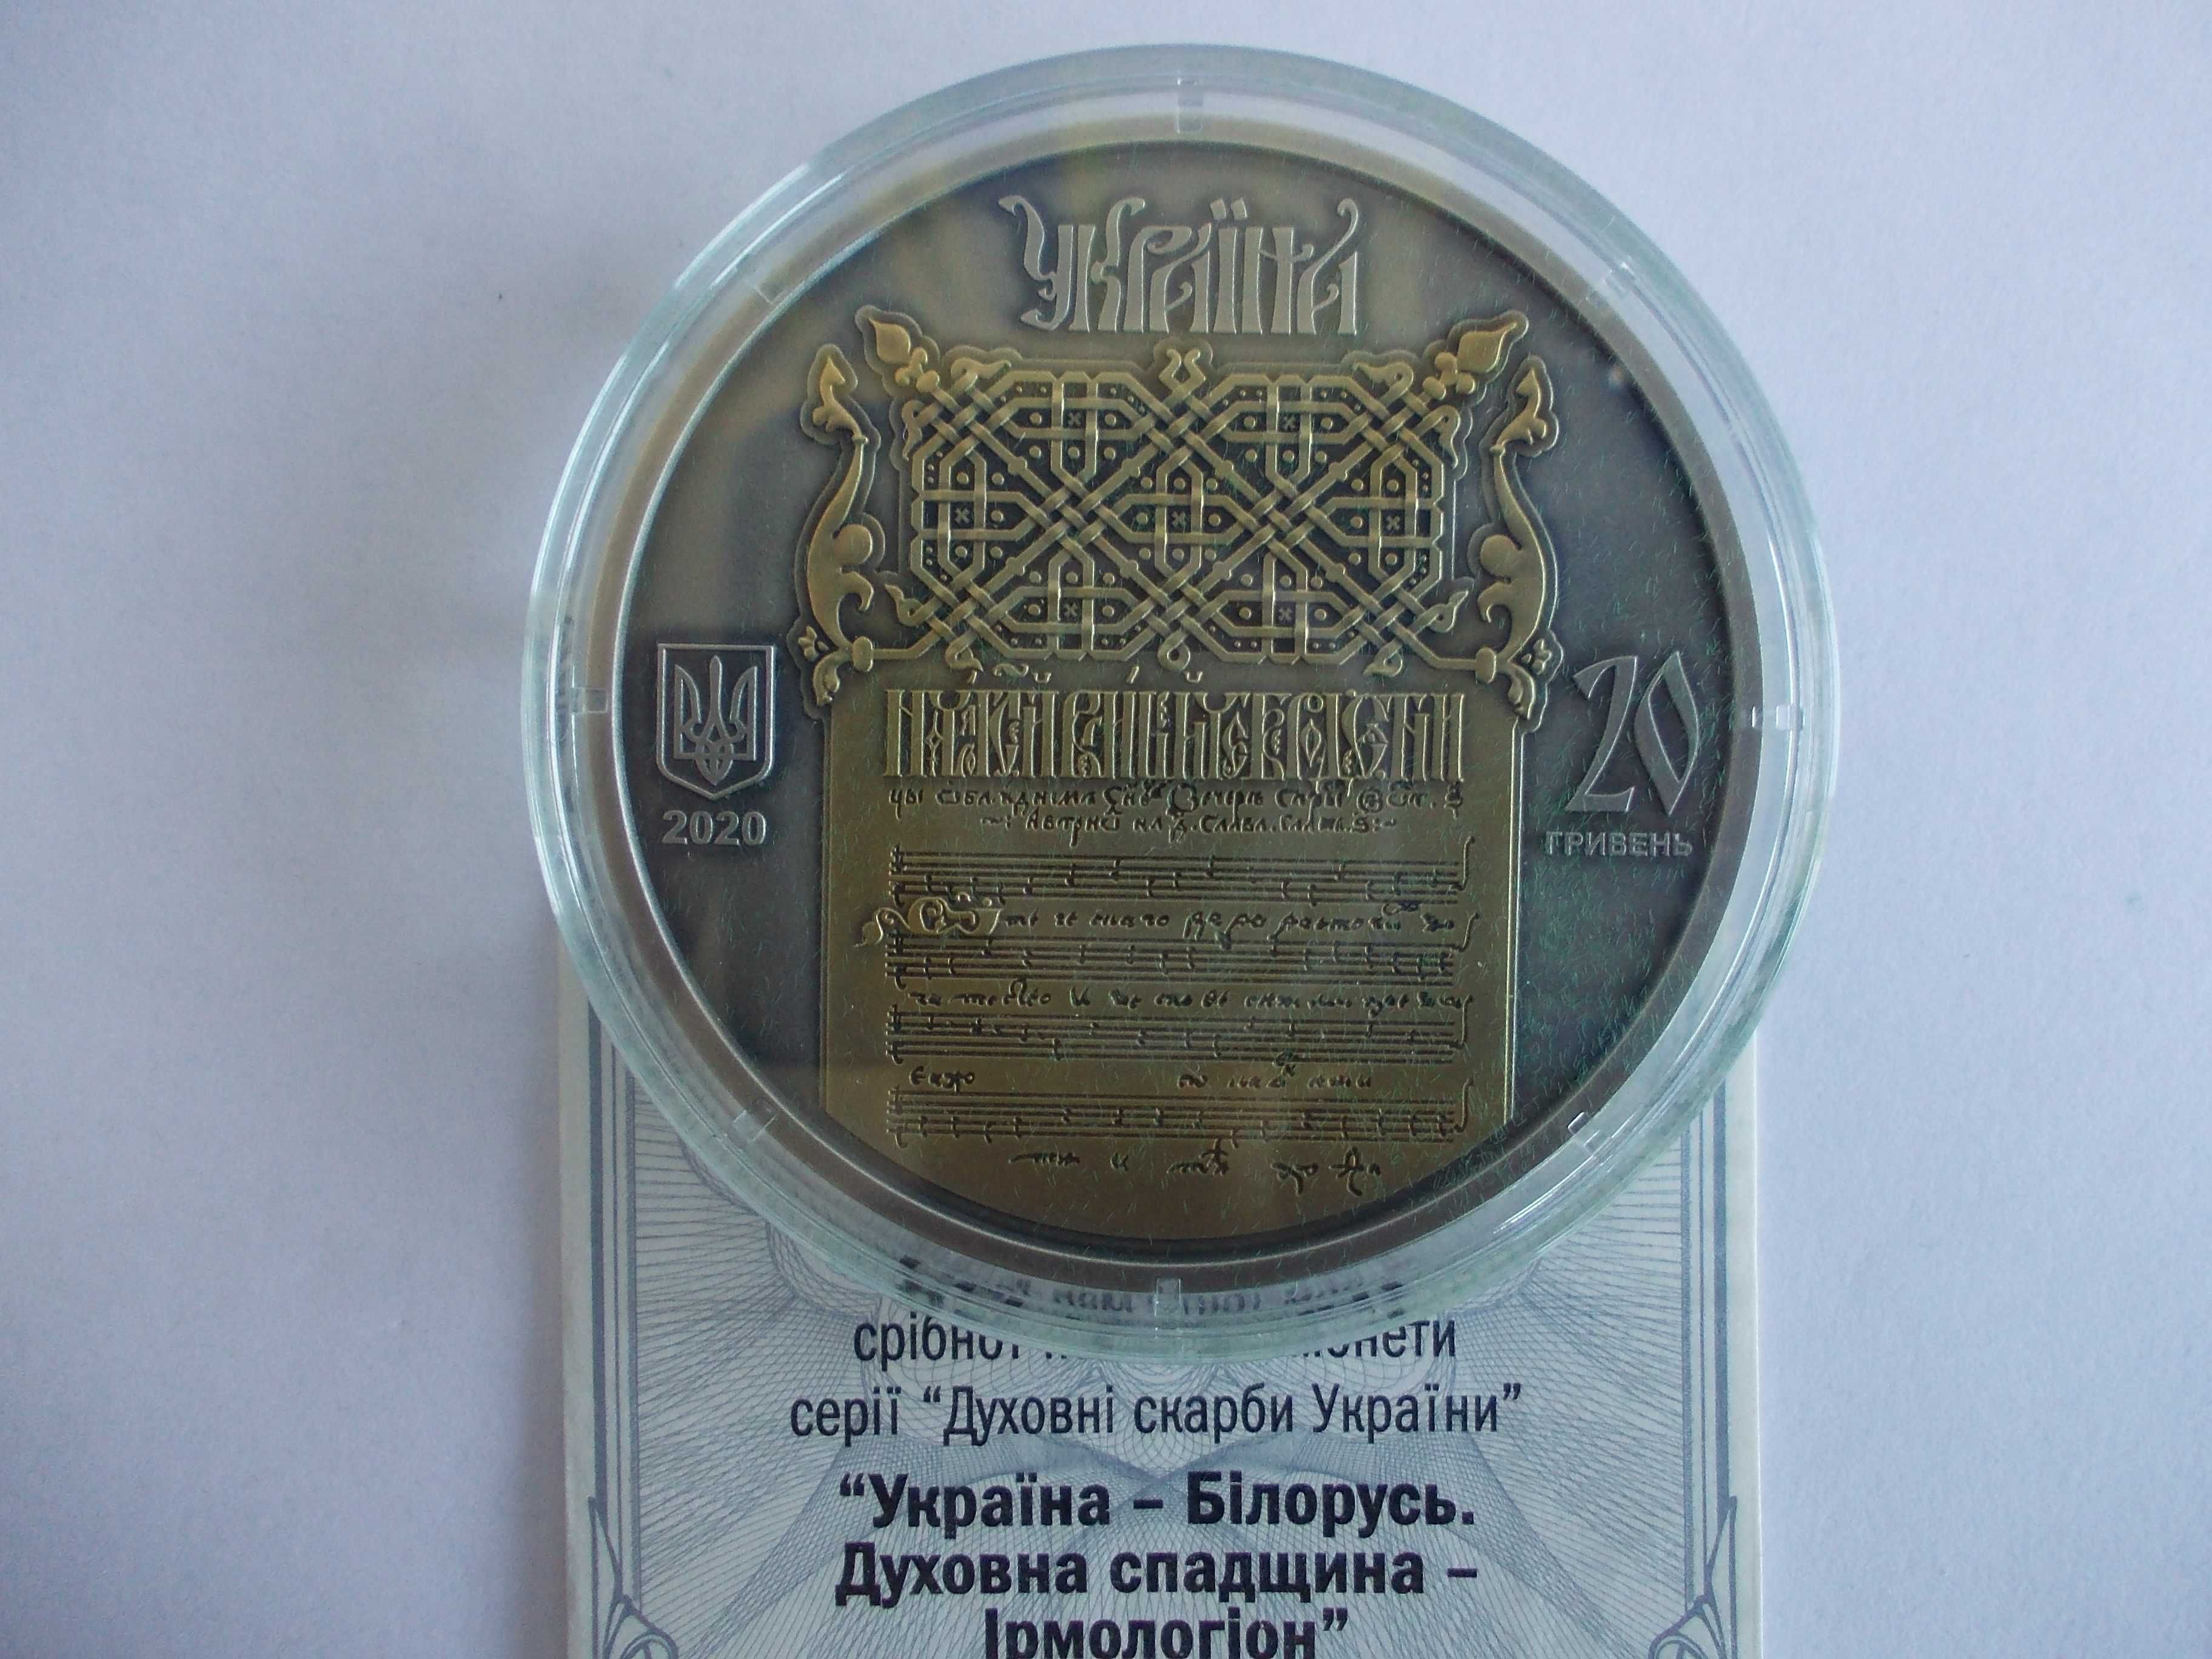 Срібна монета НБУ "Україна - Білорусь. Духовна спадщина - Ірмологіон"